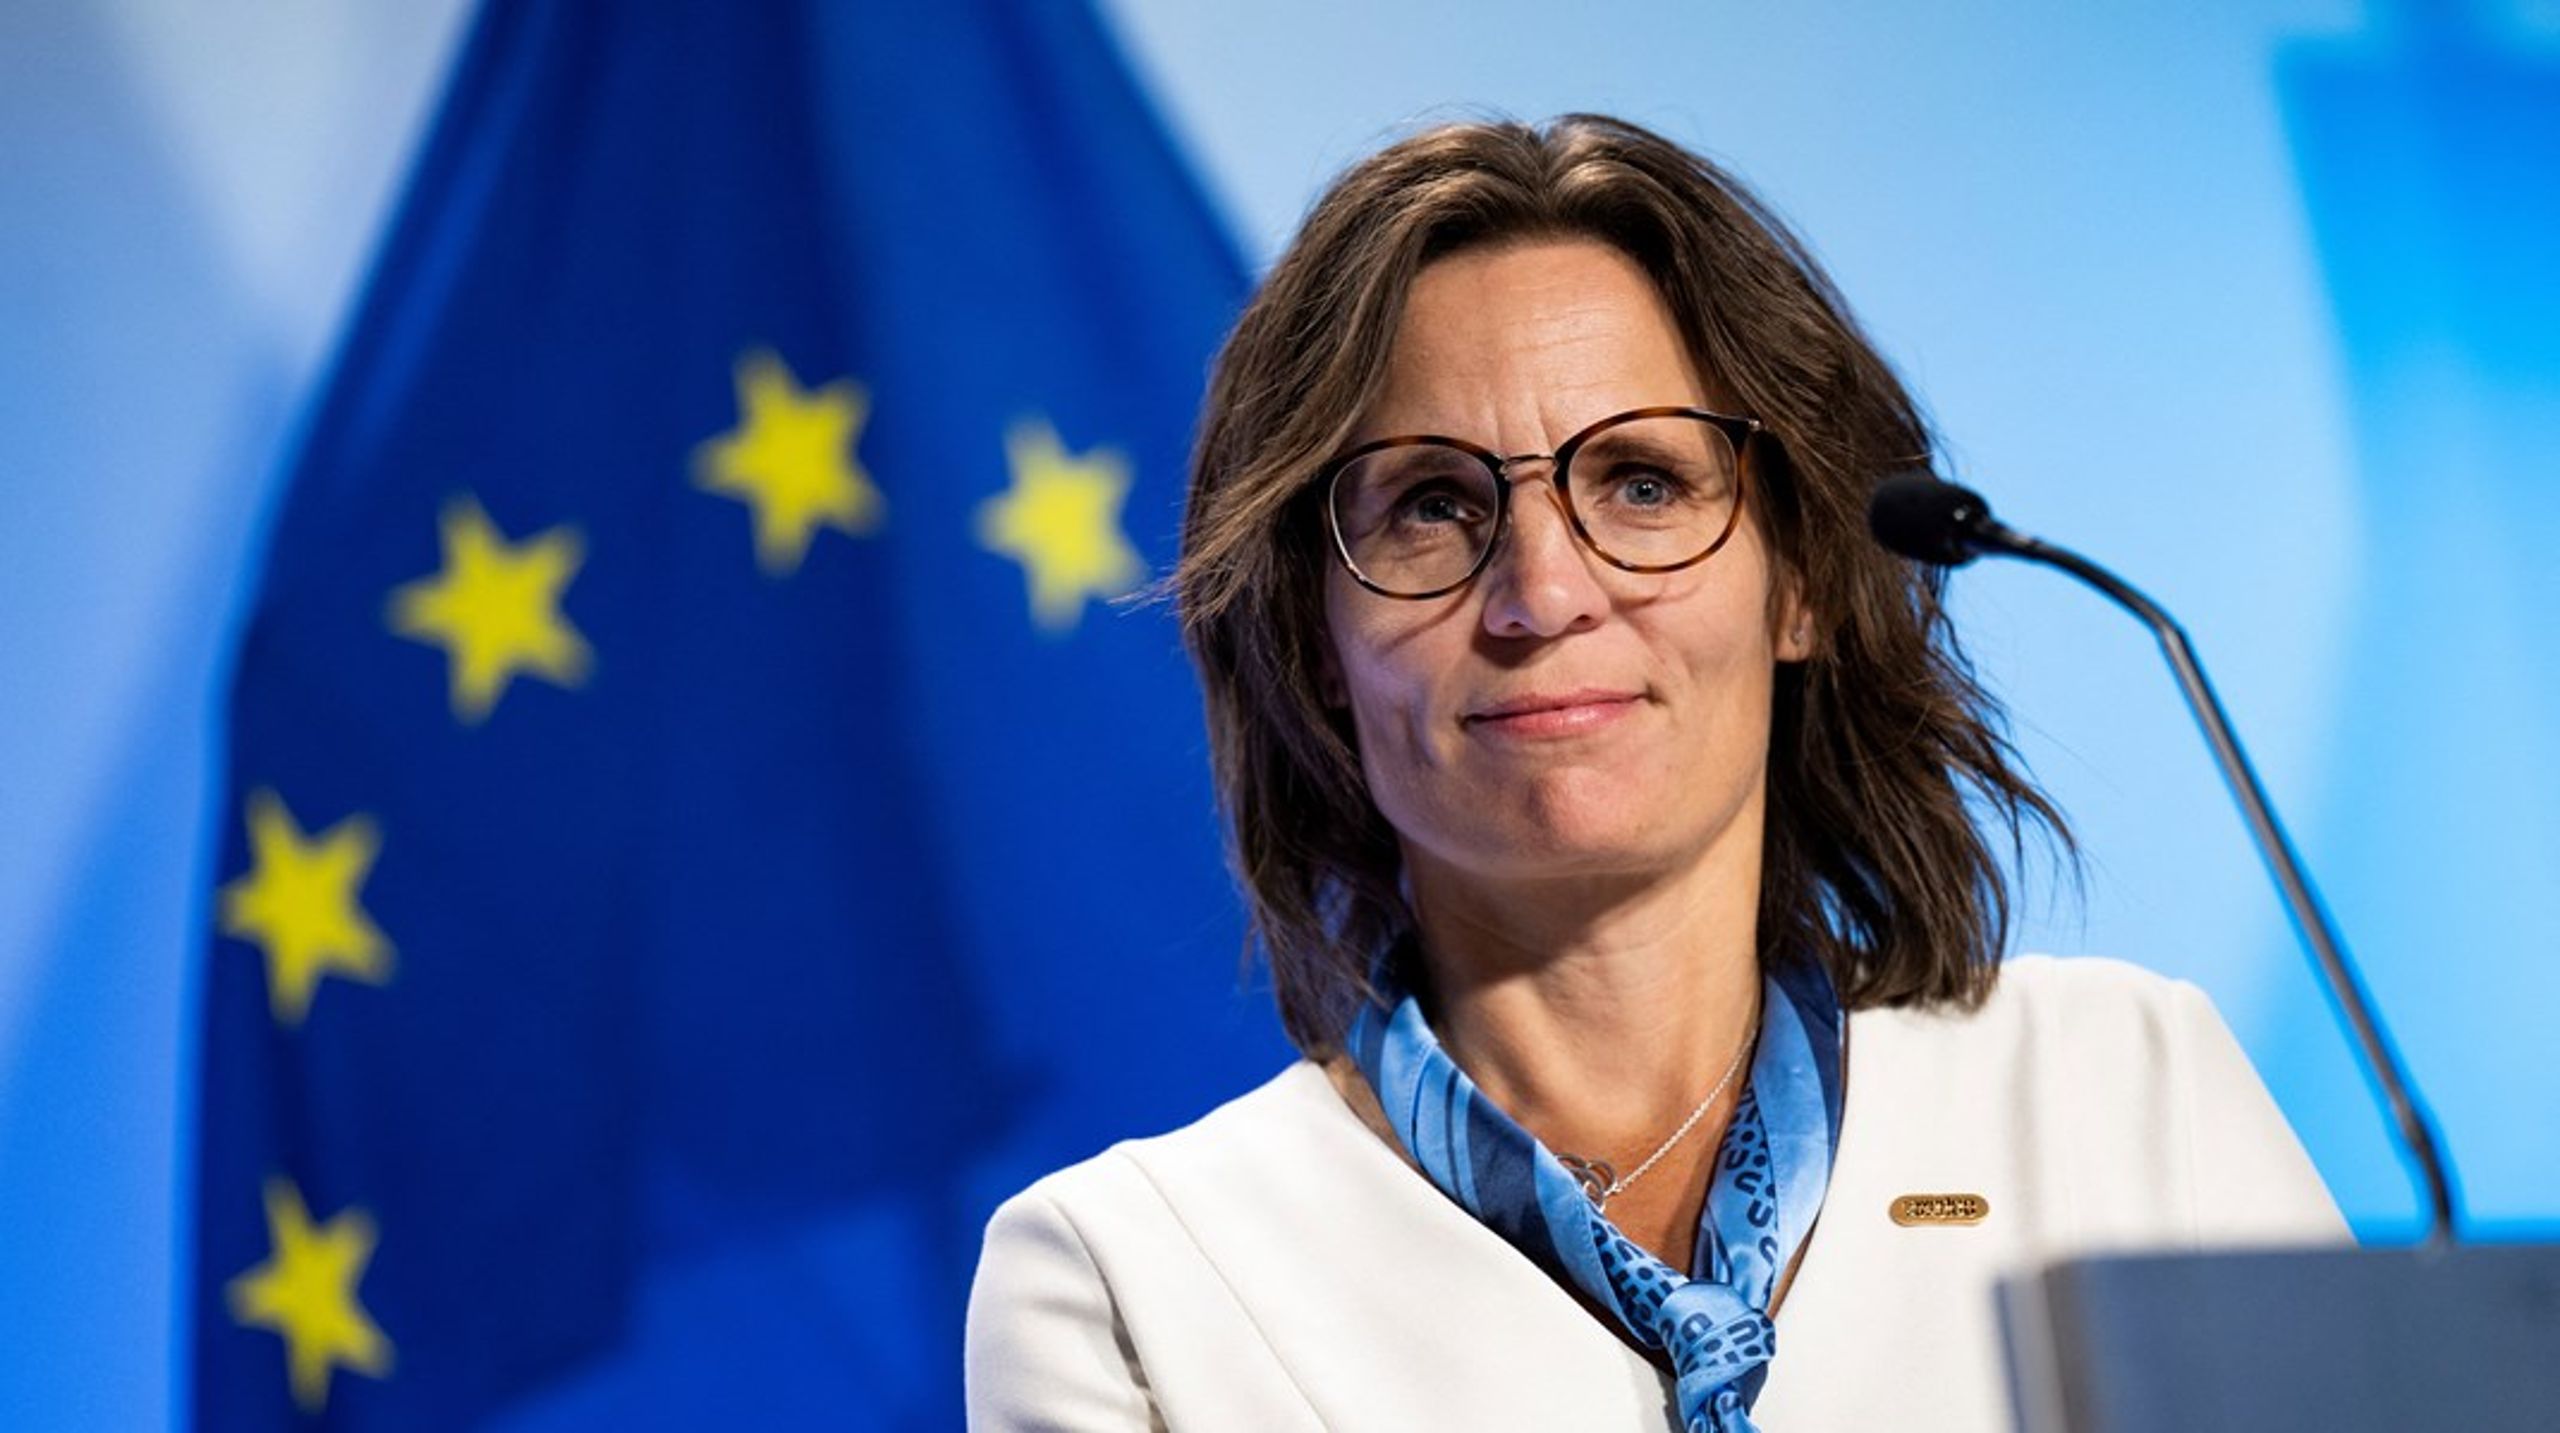 Sveriges EU-minister Jessika Roswall har nå ledet sitt aller siste ministermøte i Luxembourg.&nbsp;– Det er blandede følelser. På en måte føles det litt trist, nå som man har kommet inn i det. Samtidig føles det også litt godt. Det er mye arbeid å lede og være formann, sier hun i et intervju med Altinget.